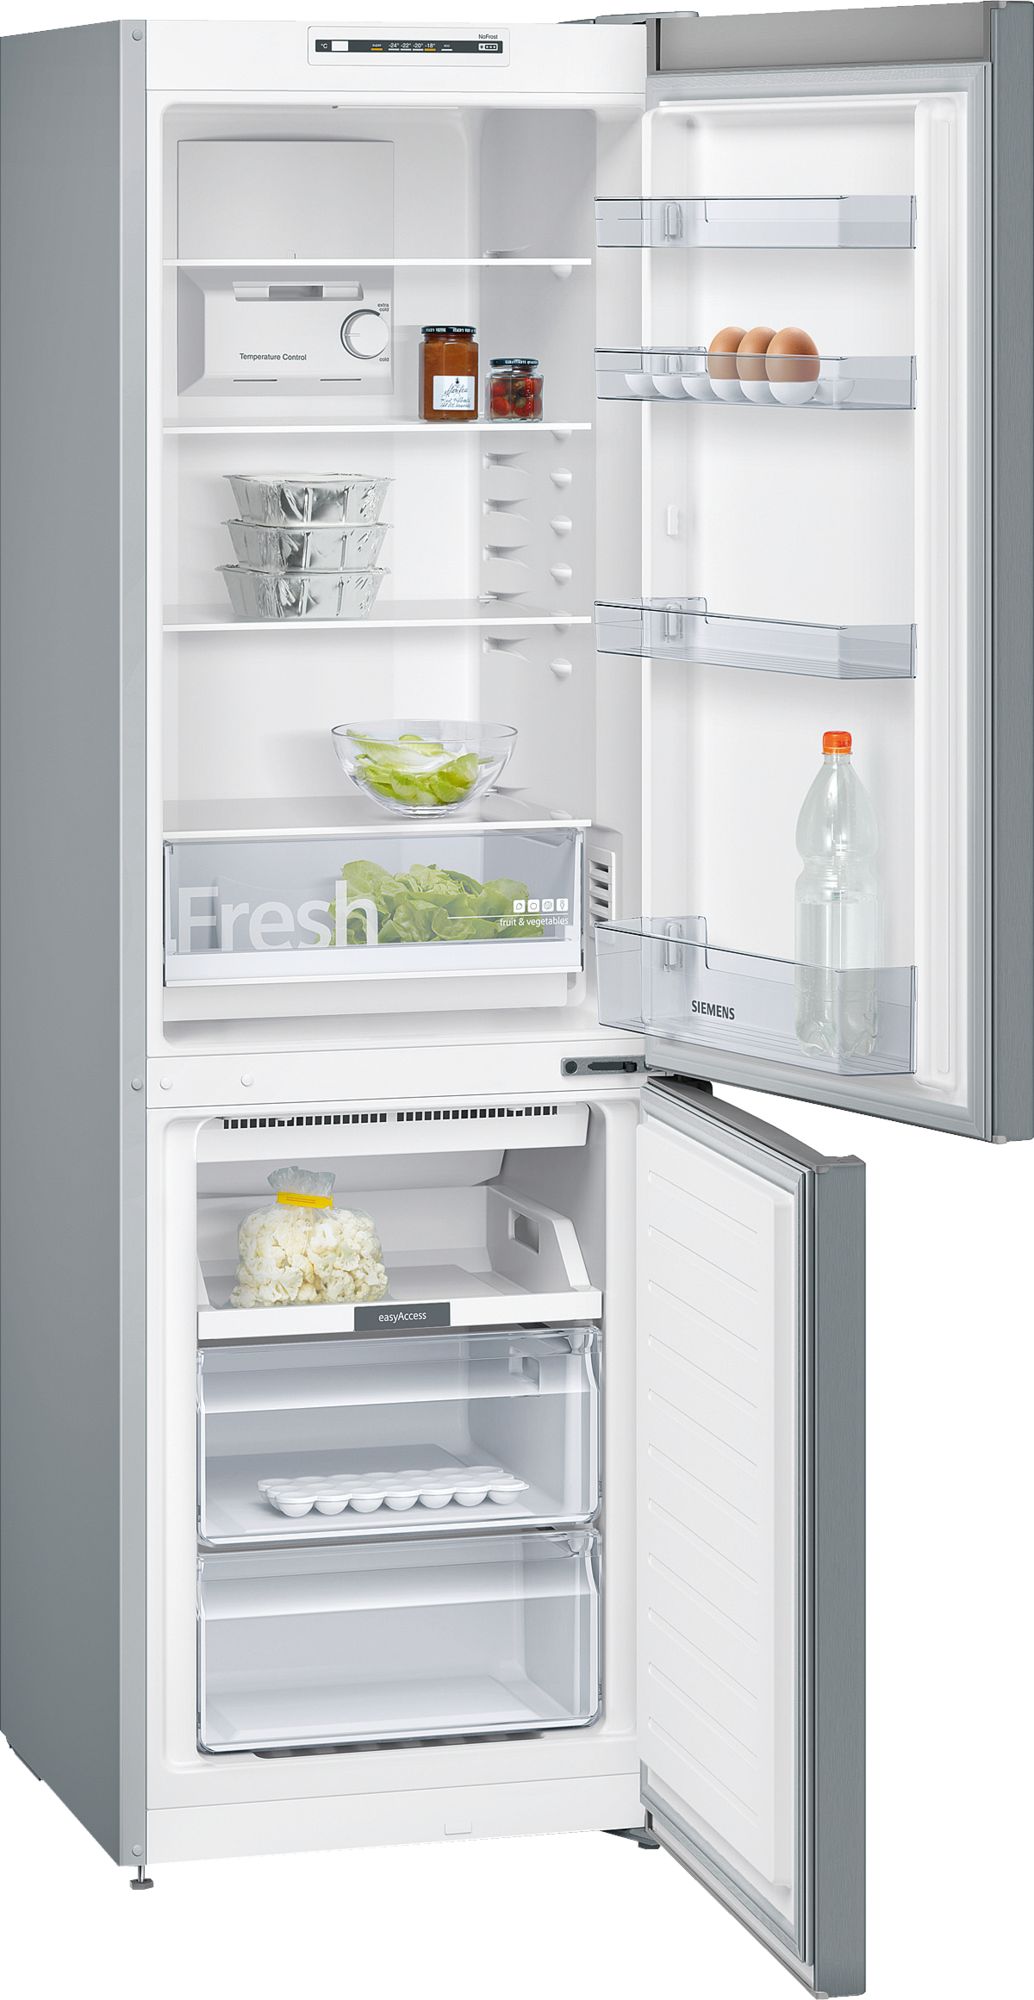 iQ100 Alttan Donduruculu Buzdolabı 186 x 60 cm Inox görünümlü